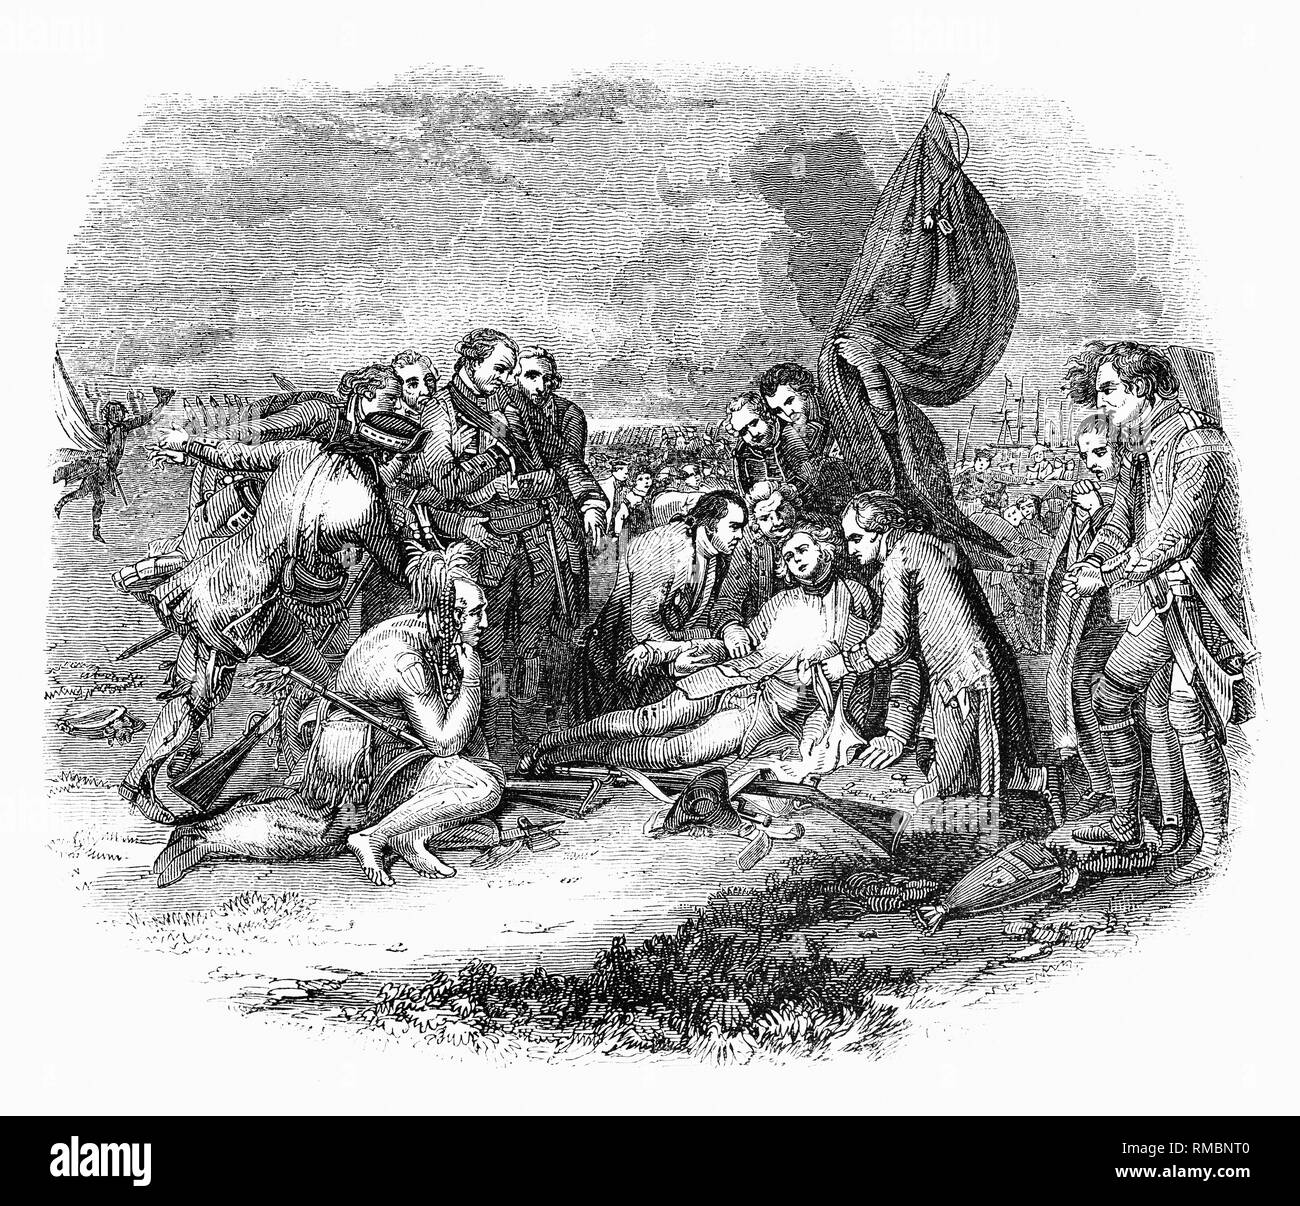 Un dessin à partir de la mort du général Wolfe, 1770 peinture de l'artiste anglo-américain Benjamin West représentant la mort du général britannique James Wolfe à la bataille de Québec en 1759 pendant la guerre de Sept Ans. La bataille de Québec, également connu sous le nom de la bataille des plaines d'Abraham, le 13 septembre 1759 a été un événement charnière dans la guerre de Sept Ans et a décidé du sort des colonies de la France en Amérique du Nord. La bataille fut livrée entre l'Armée britannique et l'armée française ; la lutte contre l'aigu n'a duré que quinze minutes. L'armée britannique était commandée par le général Wolfe. Bien que su Banque D'Images